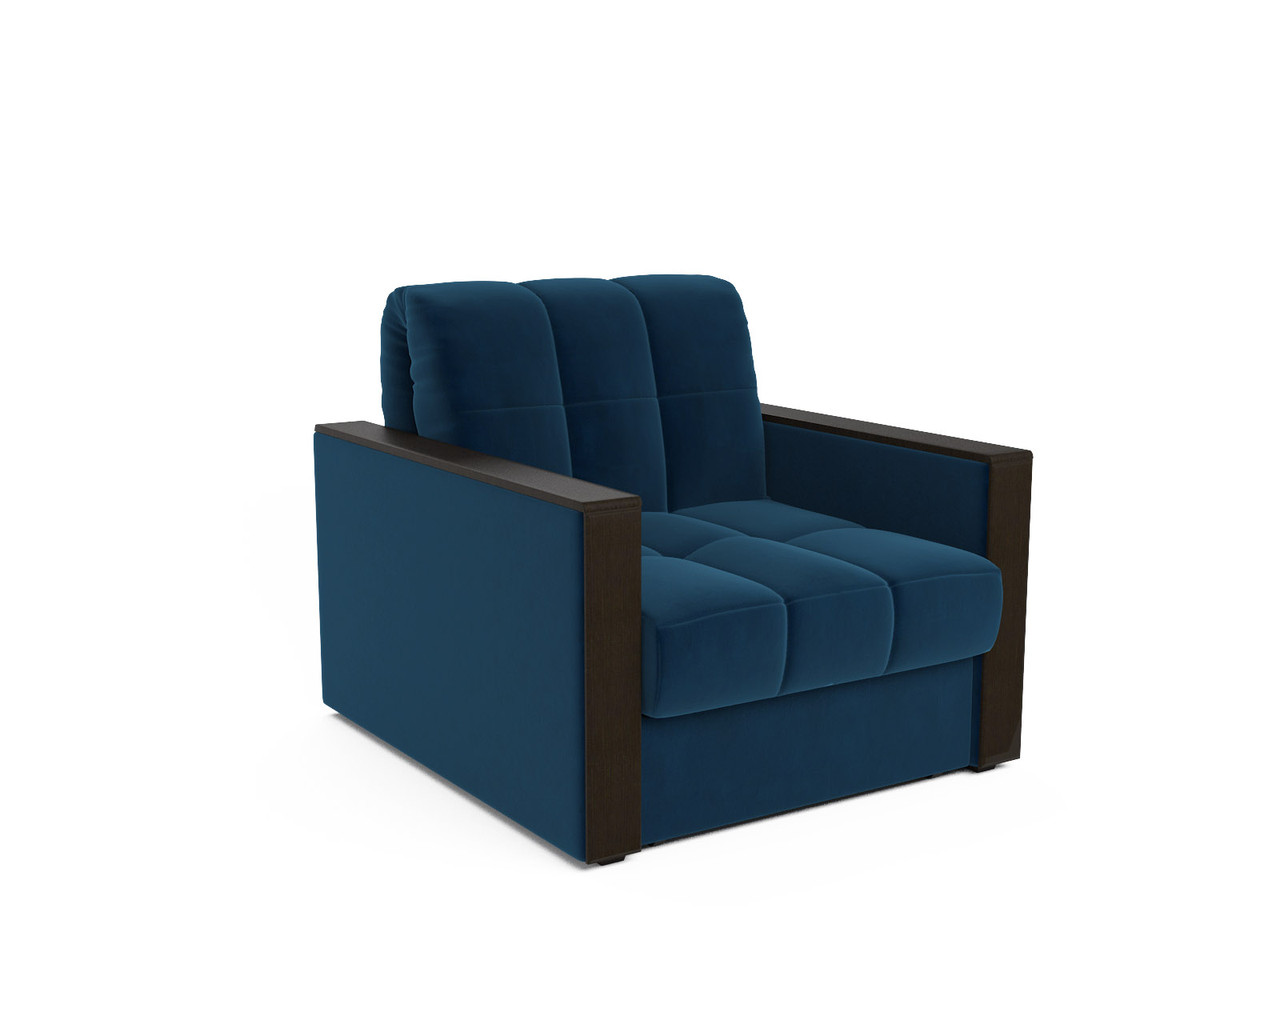 Кресло-кровать Техас (темно-синий - Luna 034)